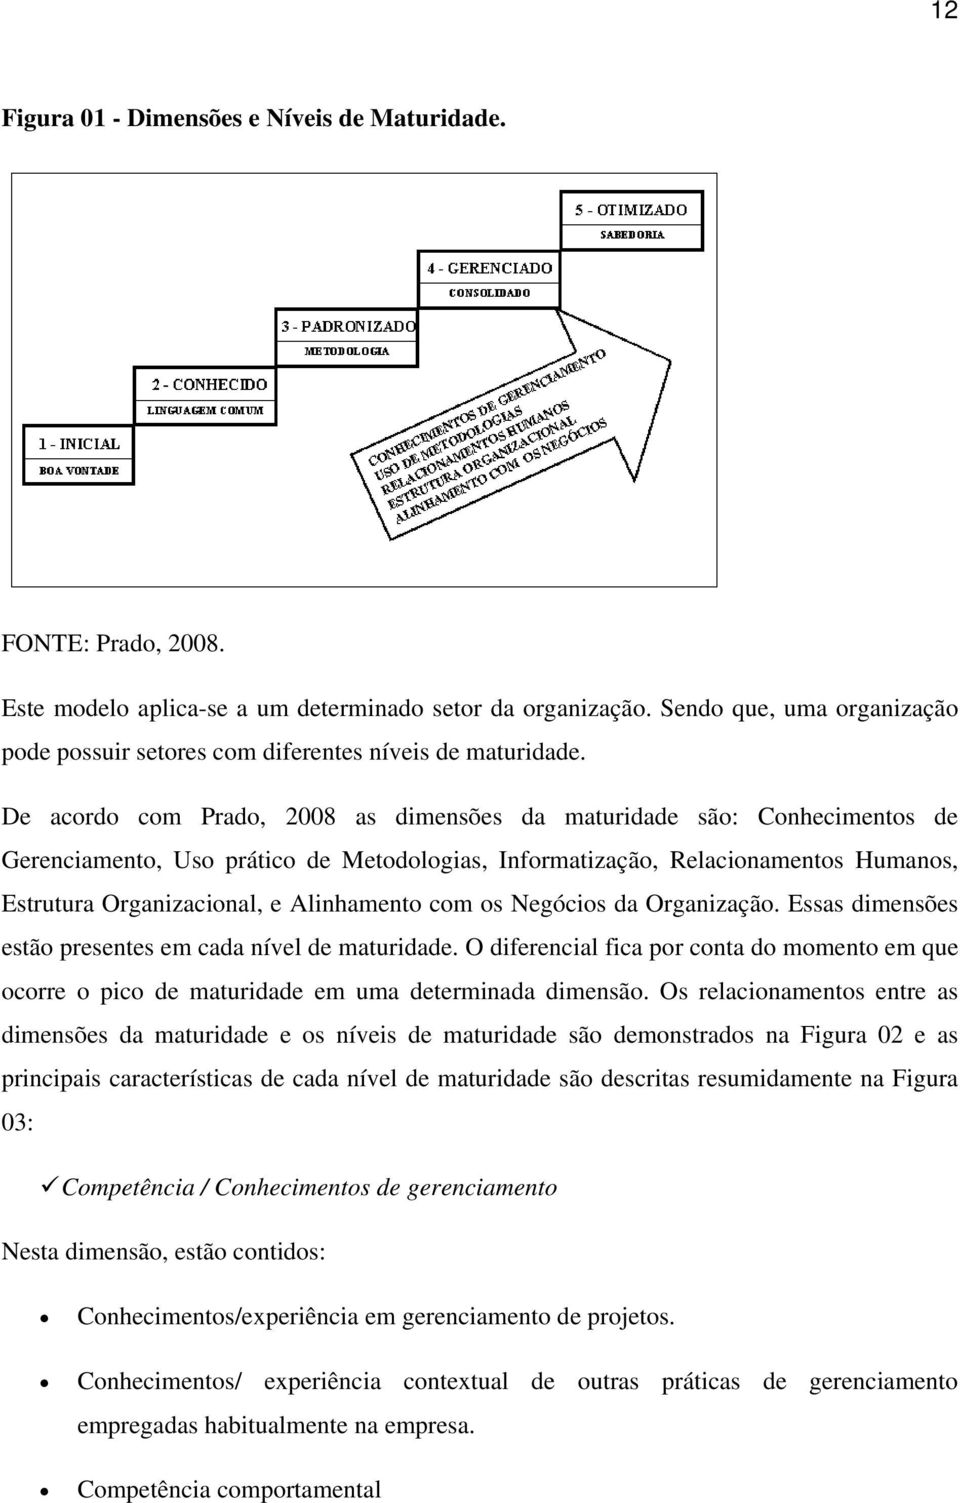 De acordo com Prado, 2008 as dimensões da maturidade são: Conhecimentos de Gerenciamento, Uso prático de Metodologias, Informatização, Relacionamentos Humanos, Estrutura Organizacional, e Alinhamento